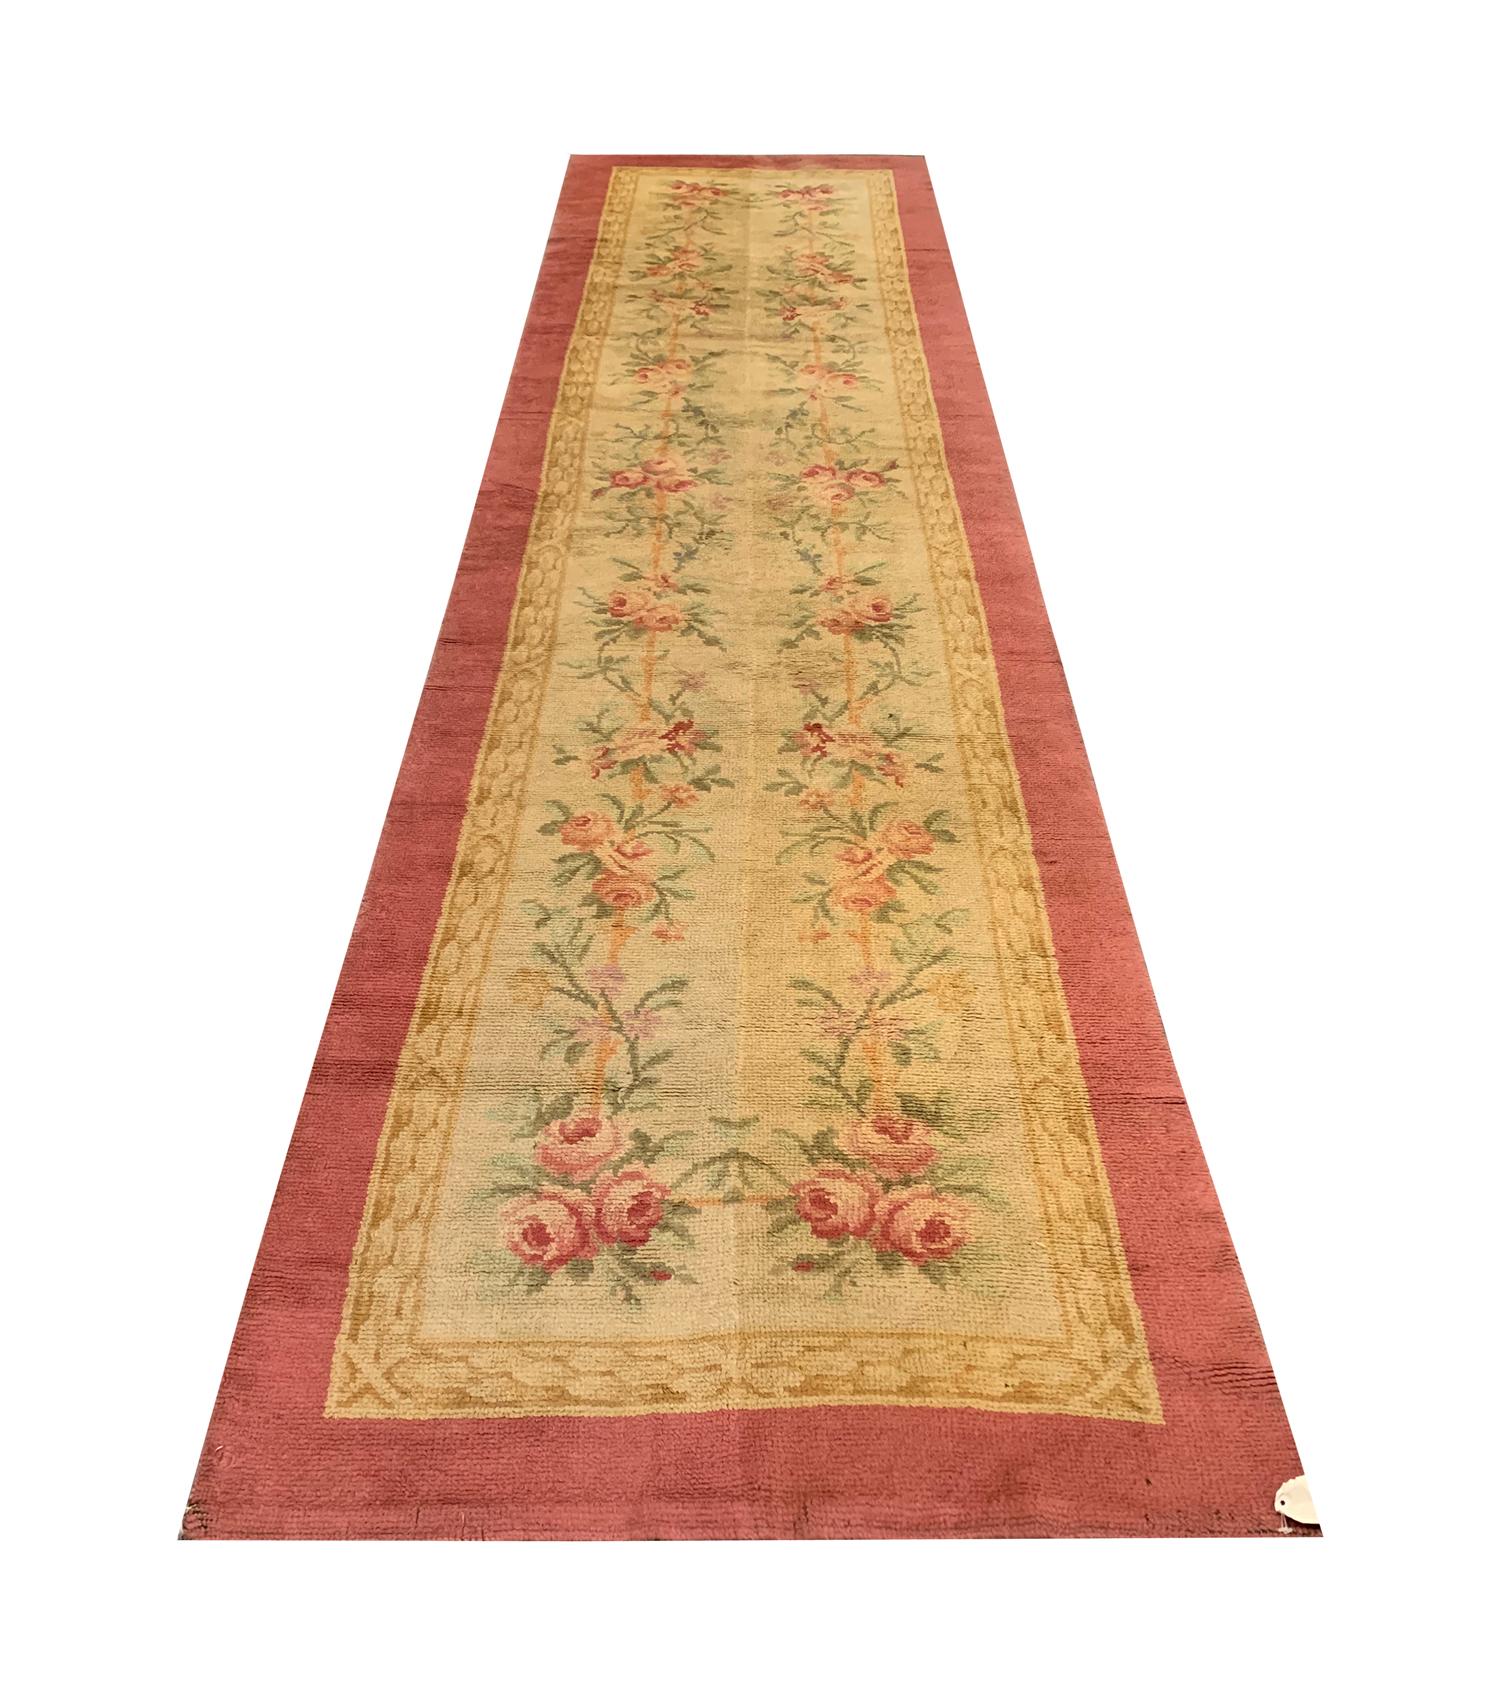 Dieser feine Wollteppich ist ein antiker Savonnerie-Teppich. Von Hand gewebt in der französischen Savonnerie-Manufaktur, renommierte europäische Teppichhersteller, mit nur den feinsten Materialien. Das Design zeigt ein elegantes, verschlungenes